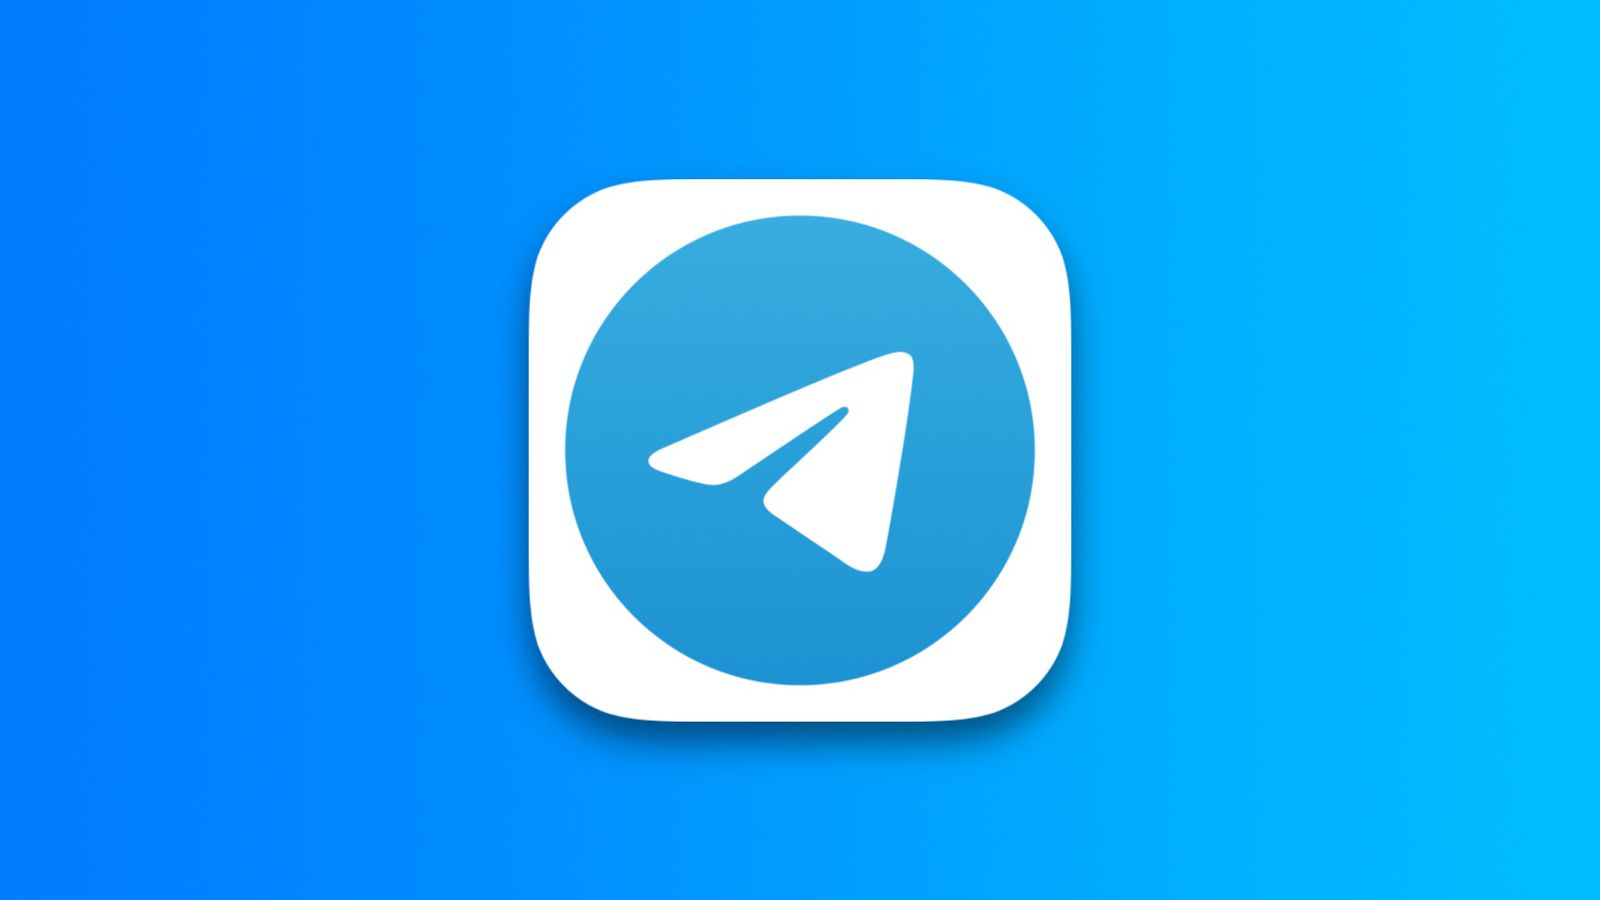 Telegram app logo cover image